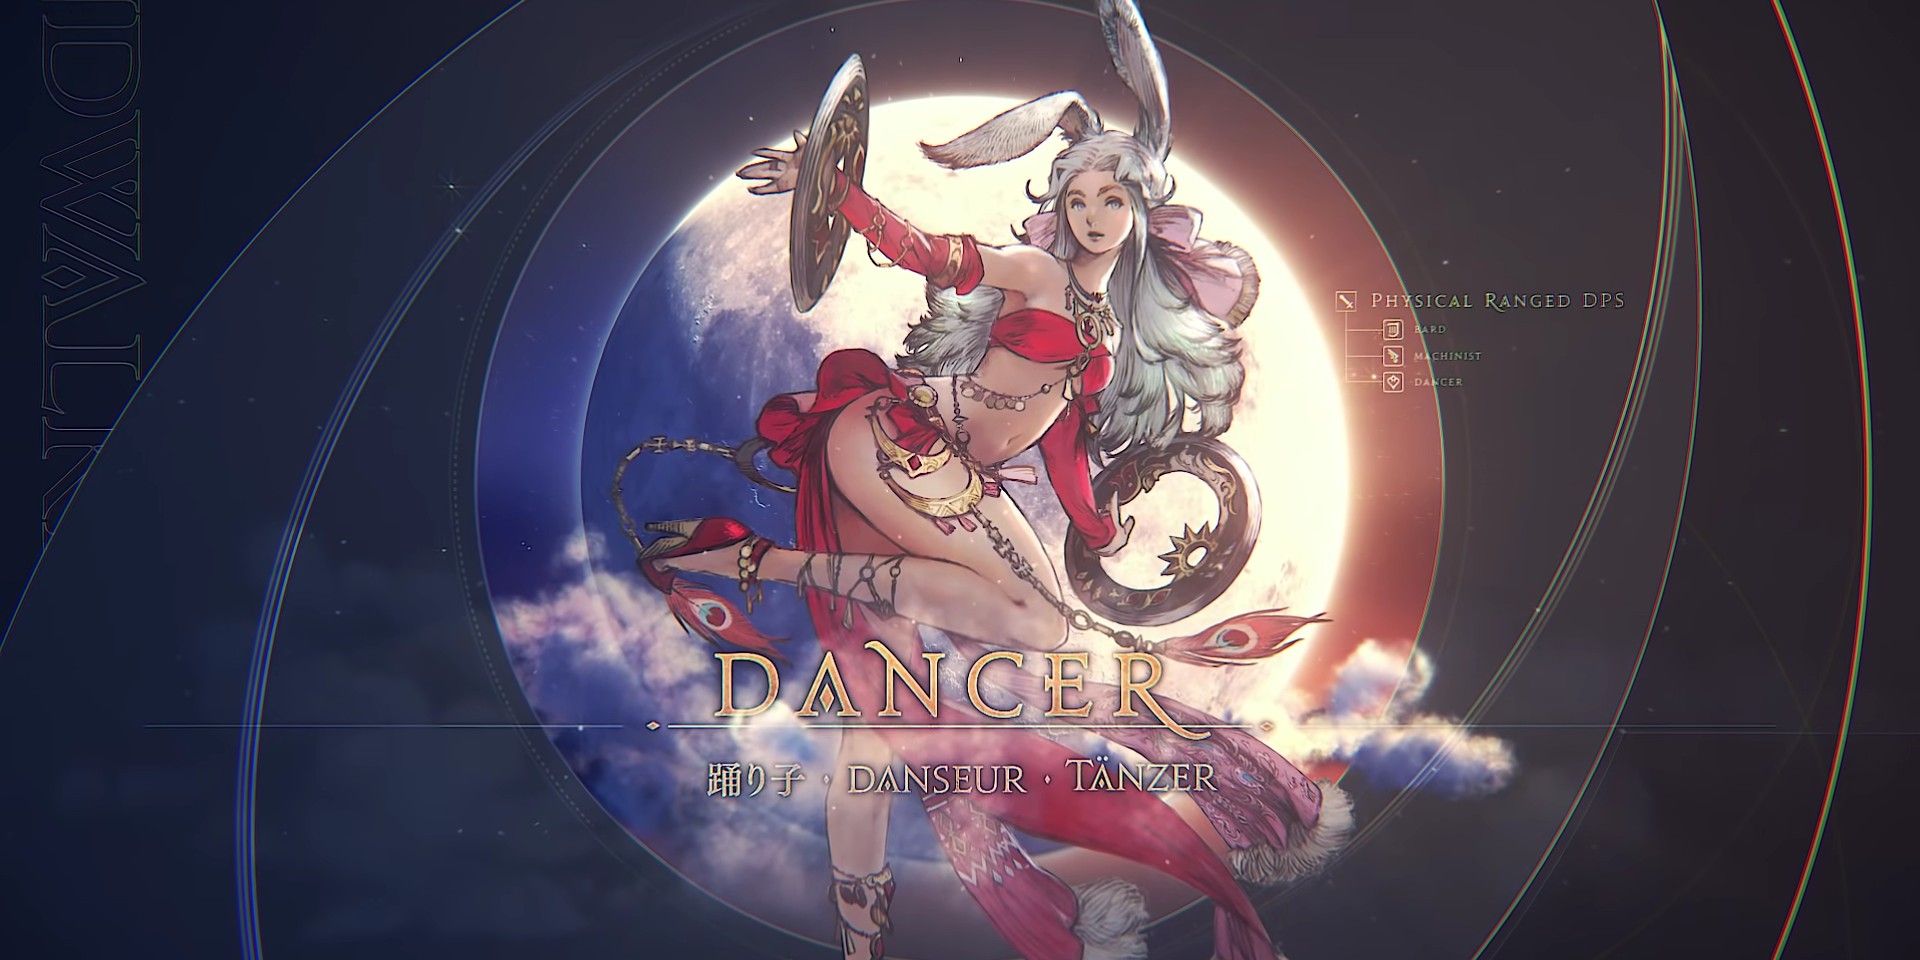 Final Fantasy XIV Endwalker Dancer In Job Changes Video